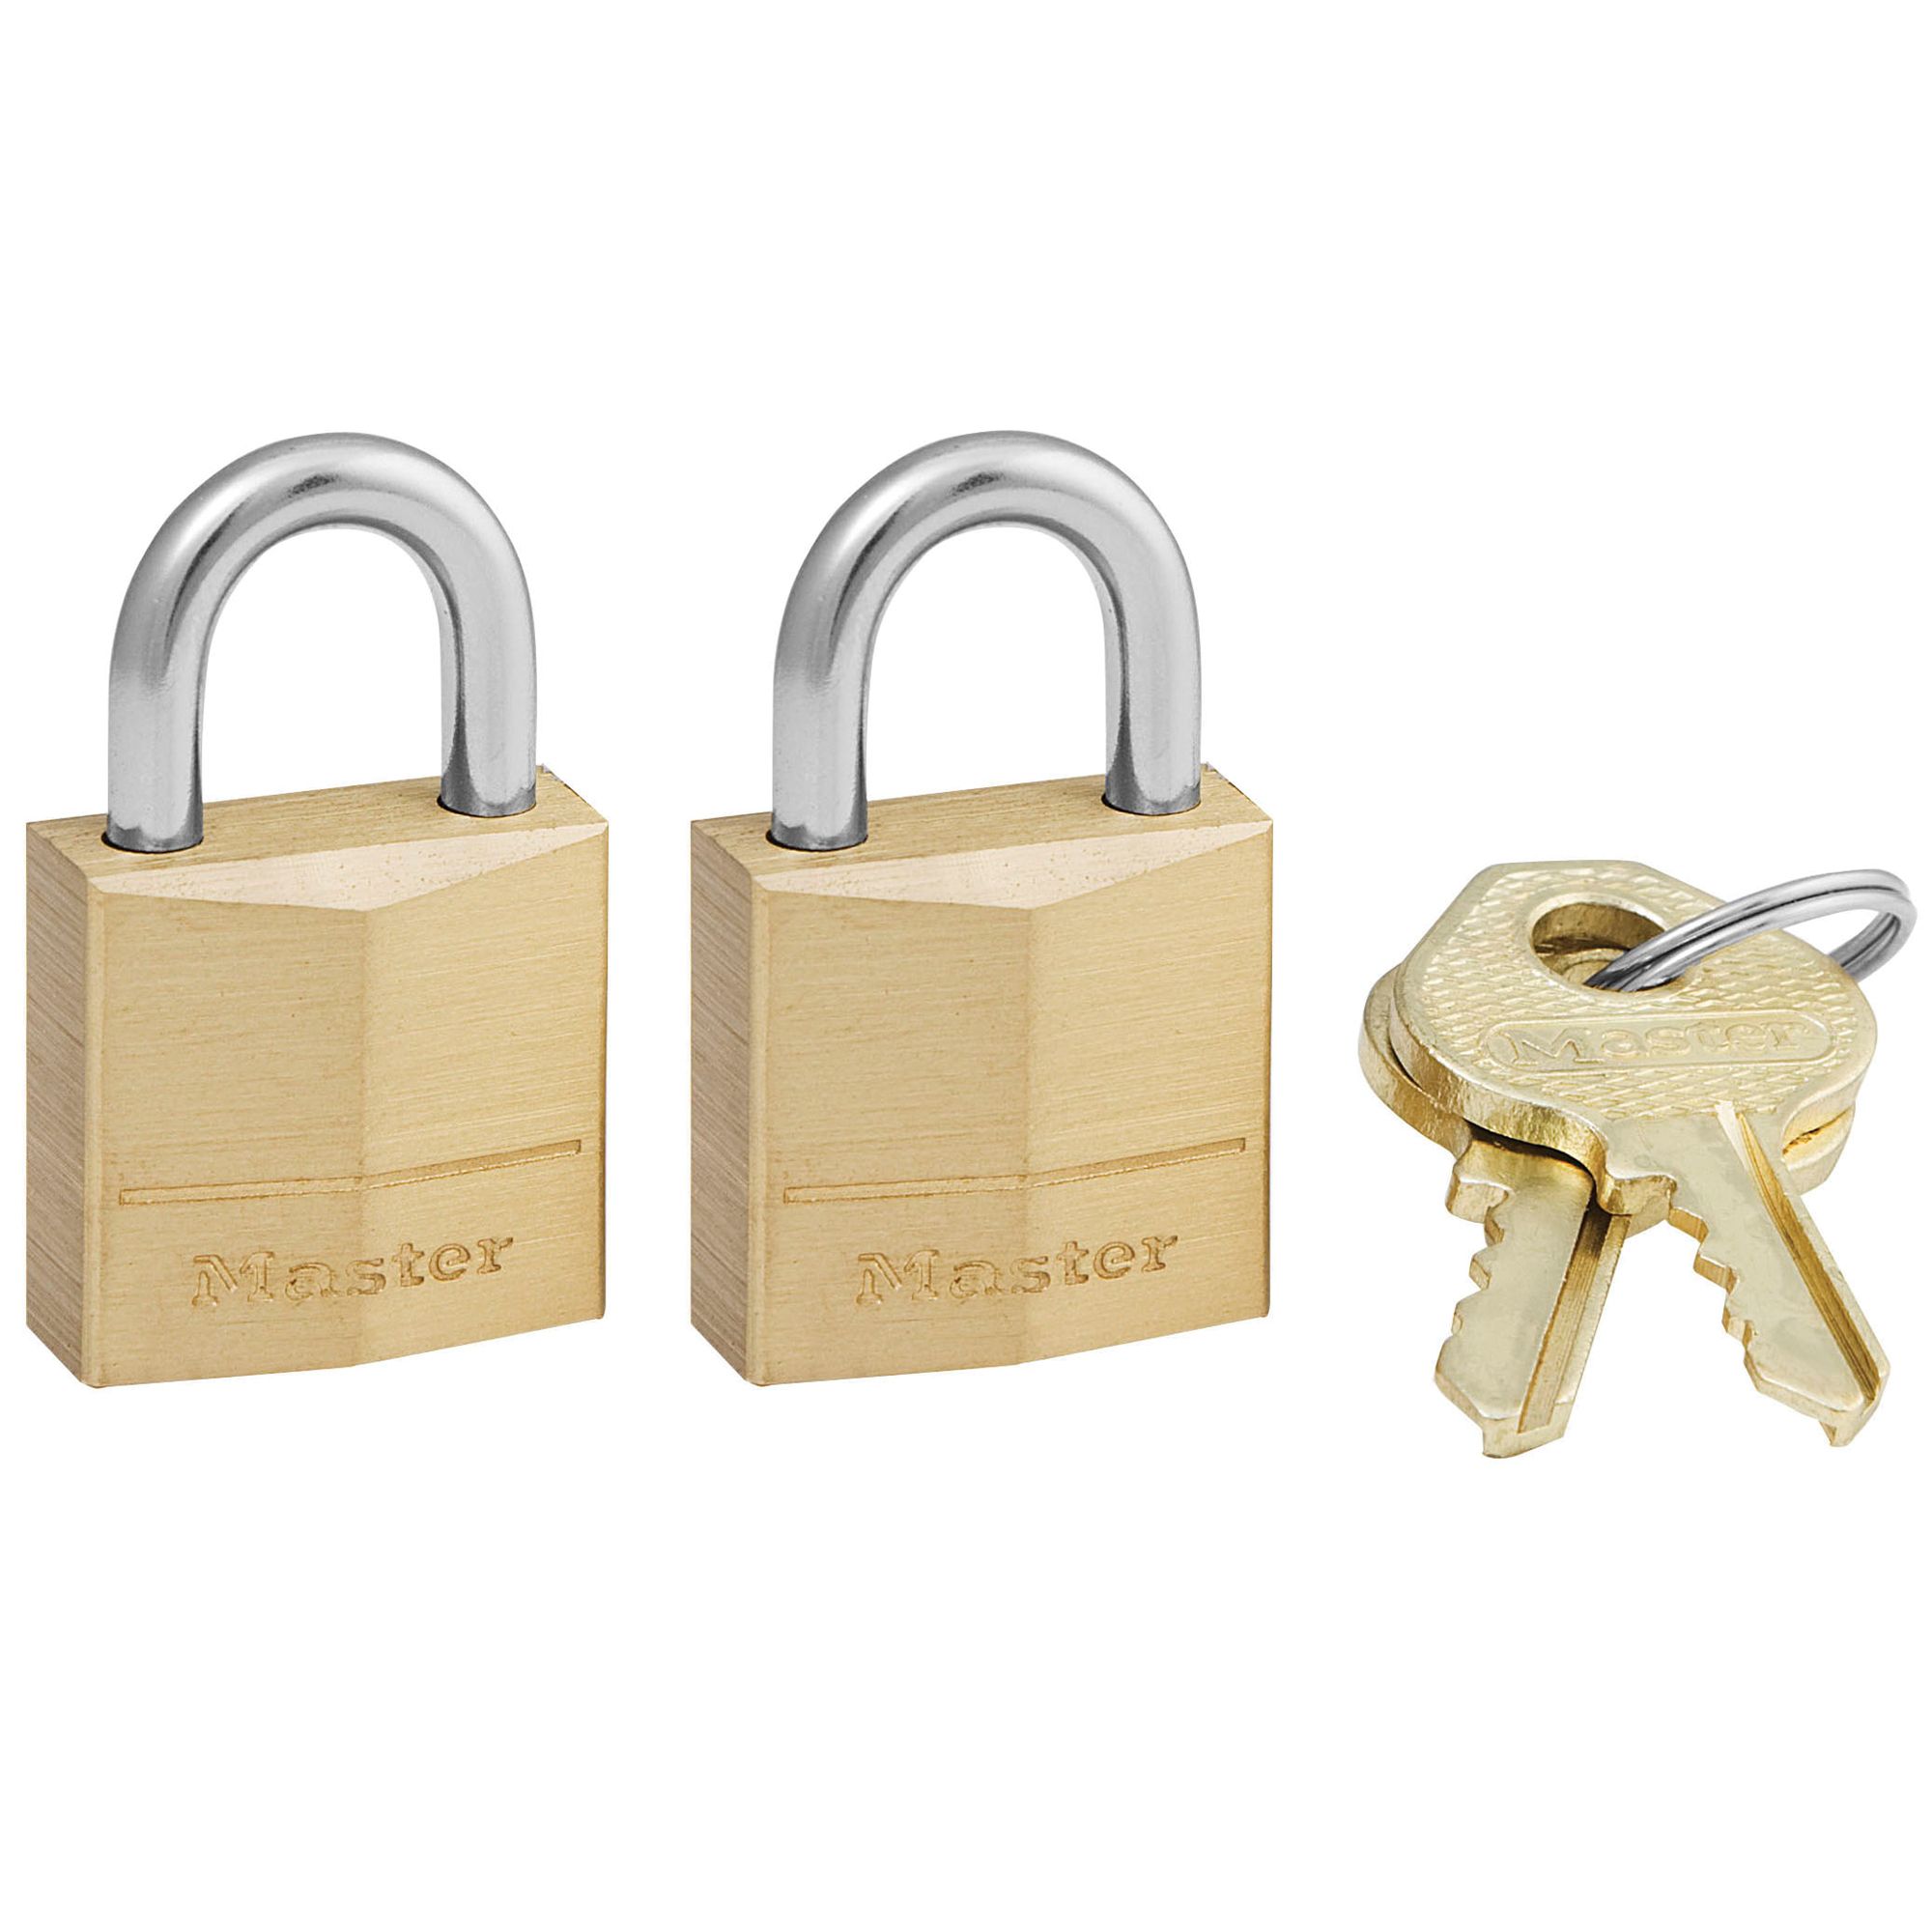 36 Keys Grip Tight Tools Steel Gate Padlock 2-5/8" Long Shackle 12 Pack 